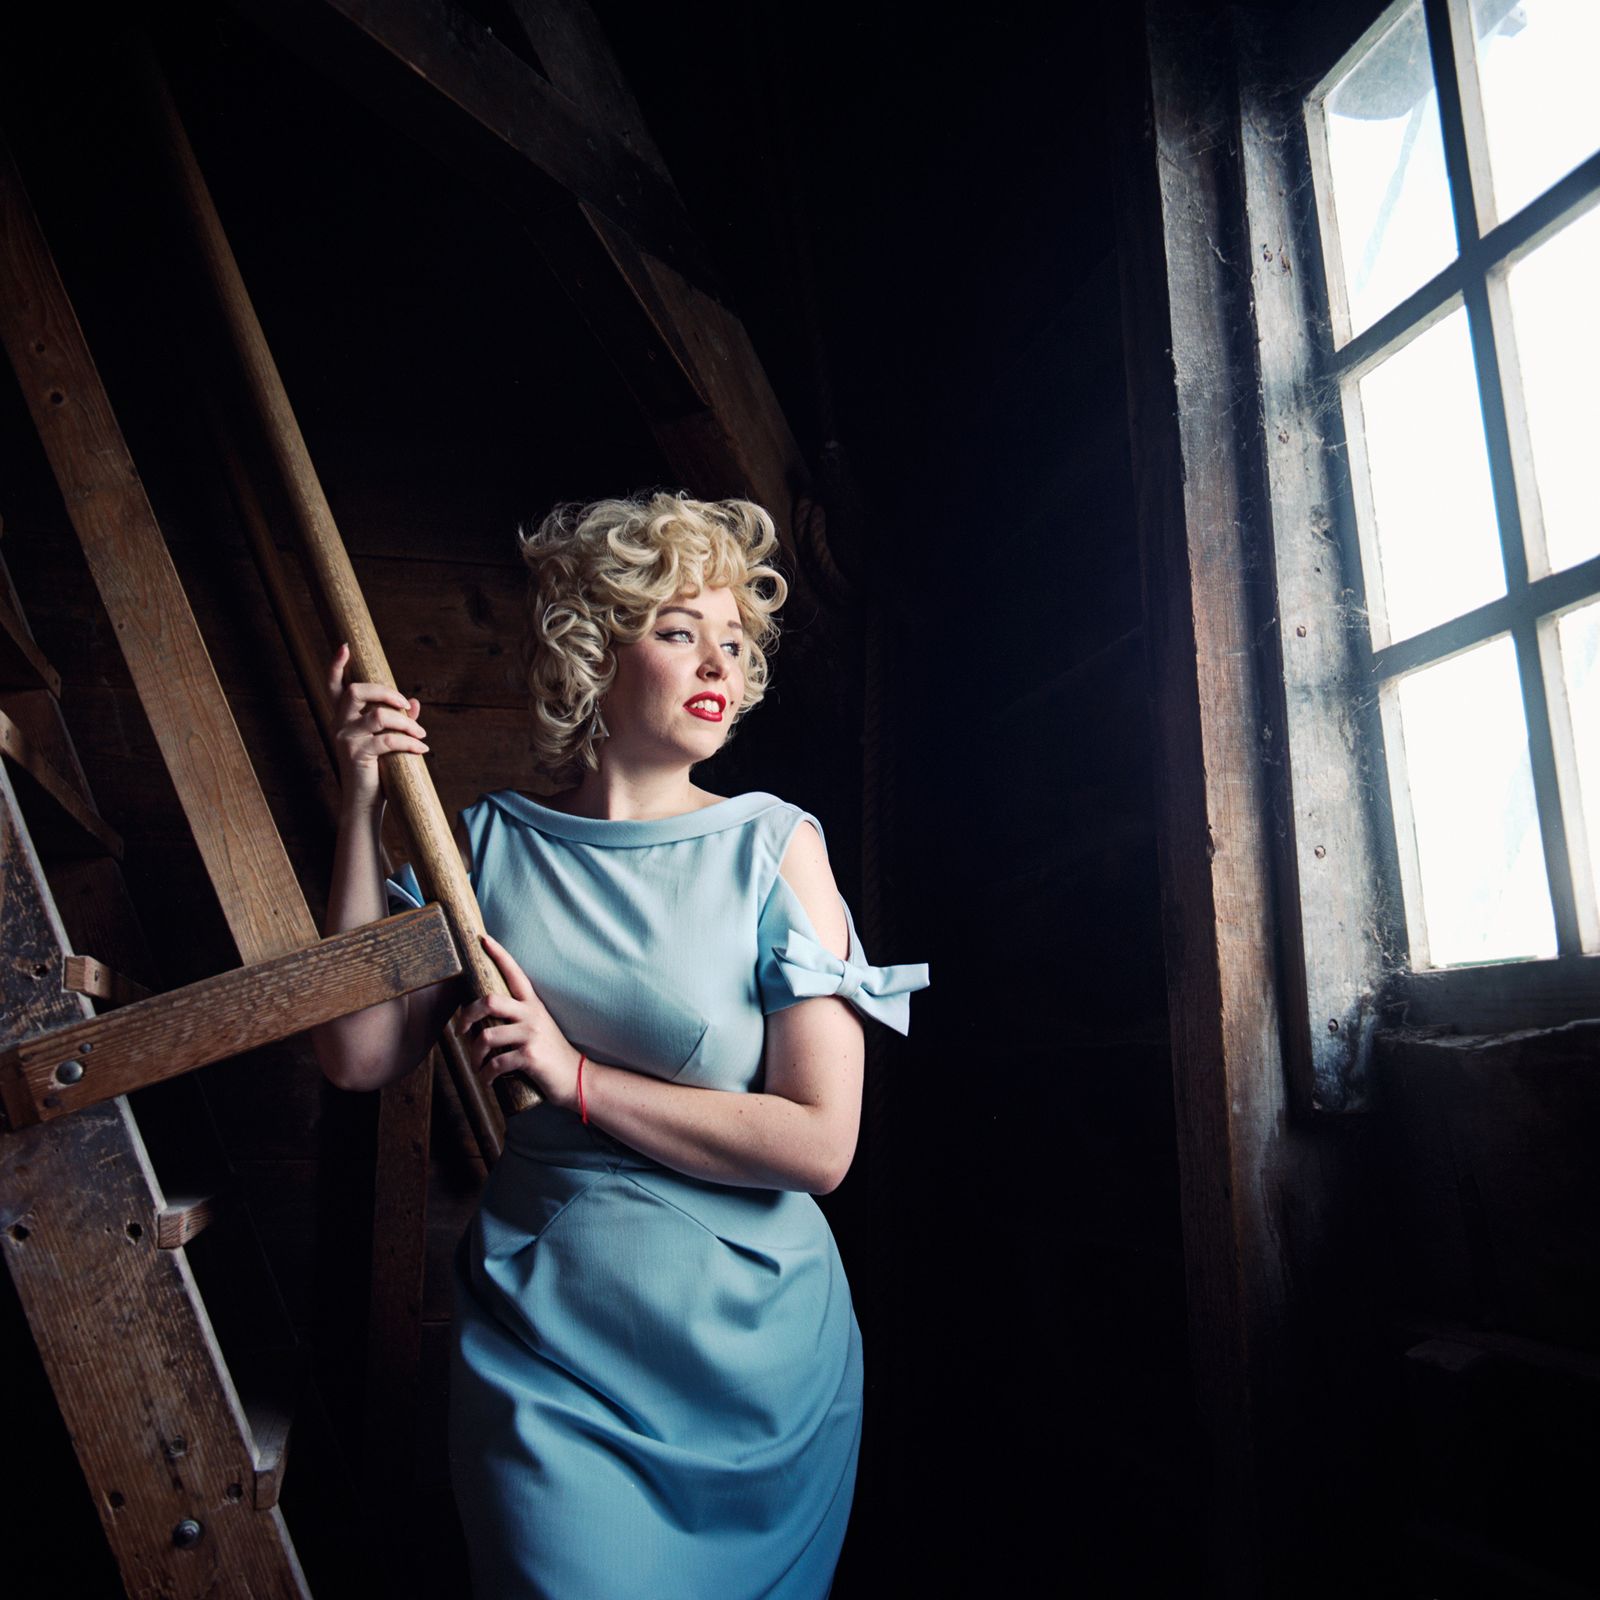 © Emily Berl - Debra as Marilyn Monroe, Zaanse Schans, The Netherlands, 2014.